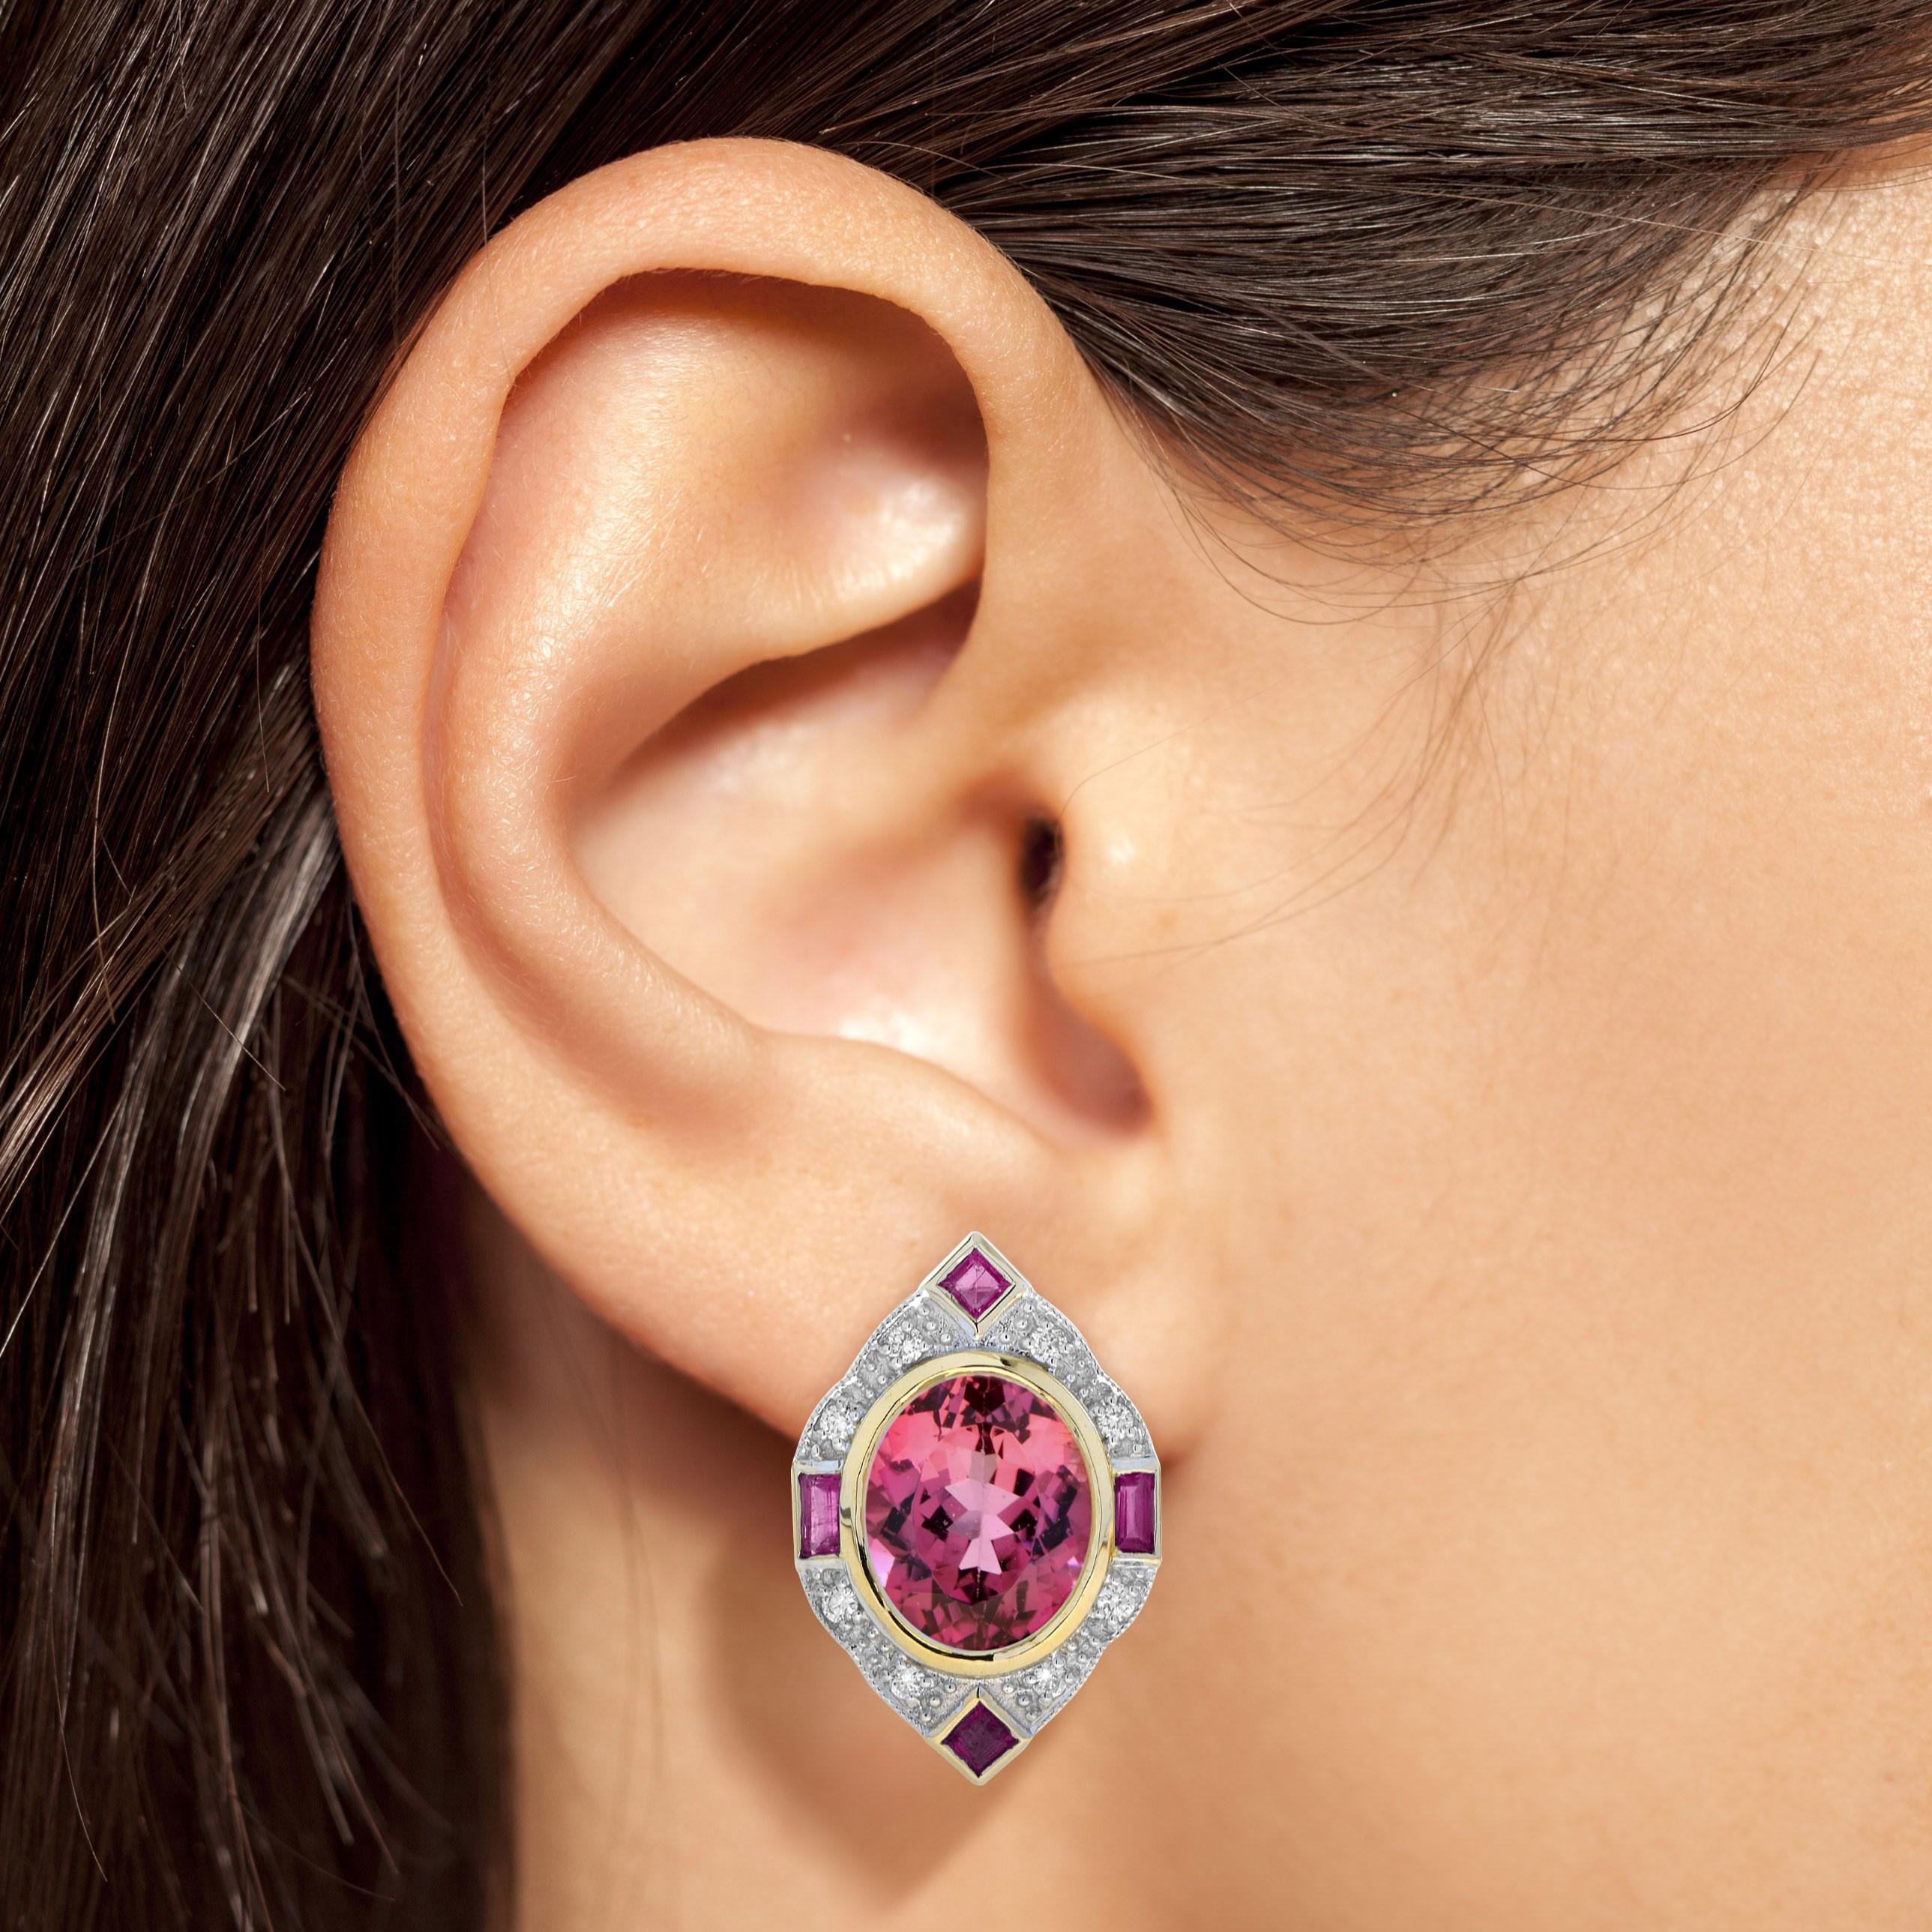 Diese fantasievollen, vom Art déco inspirierten Ohrringe aus 14 Karat Roségold enthalten einen ovalen, leuchtend rosafarbenen Turmalin von insgesamt 10,48 Karat, der von funkelnden runden Diamanten und Rubinen umgeben ist. Dieses charmante Stück ist